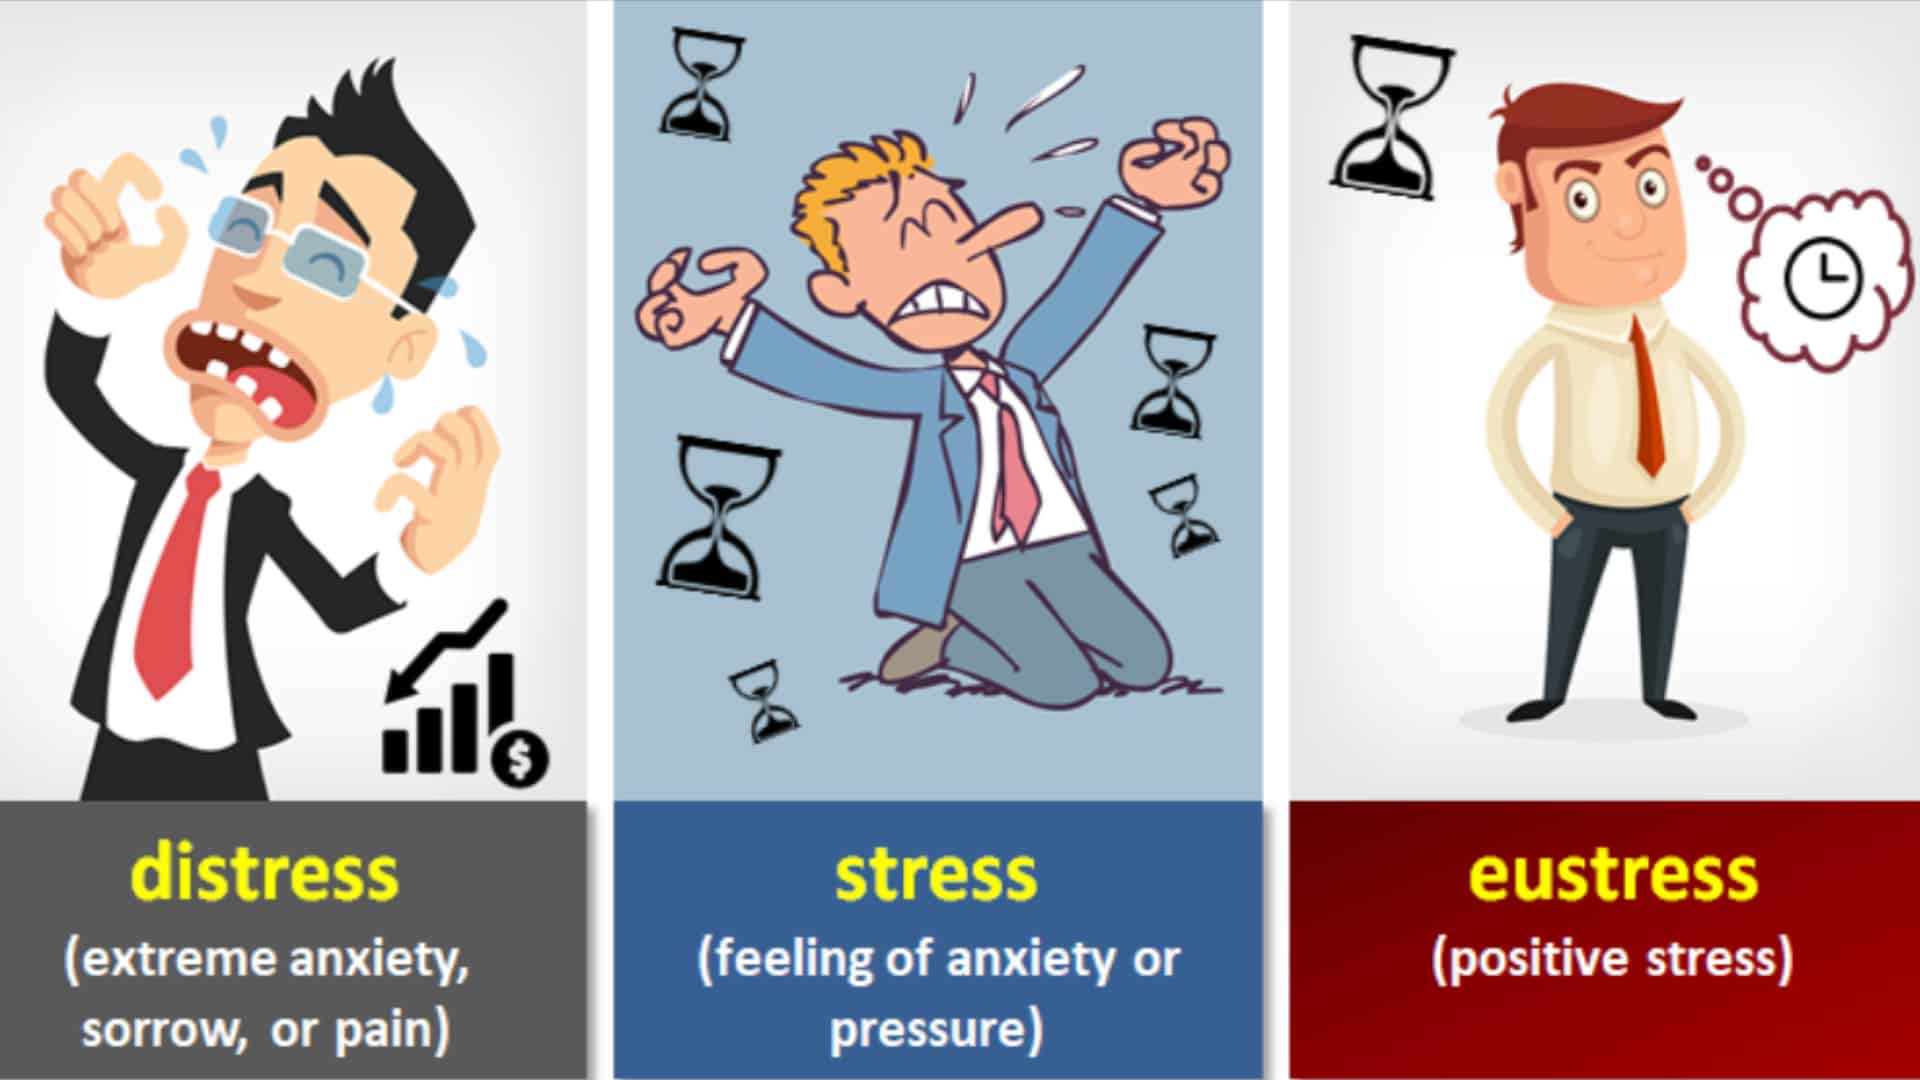 Stress, Eustress and Distress